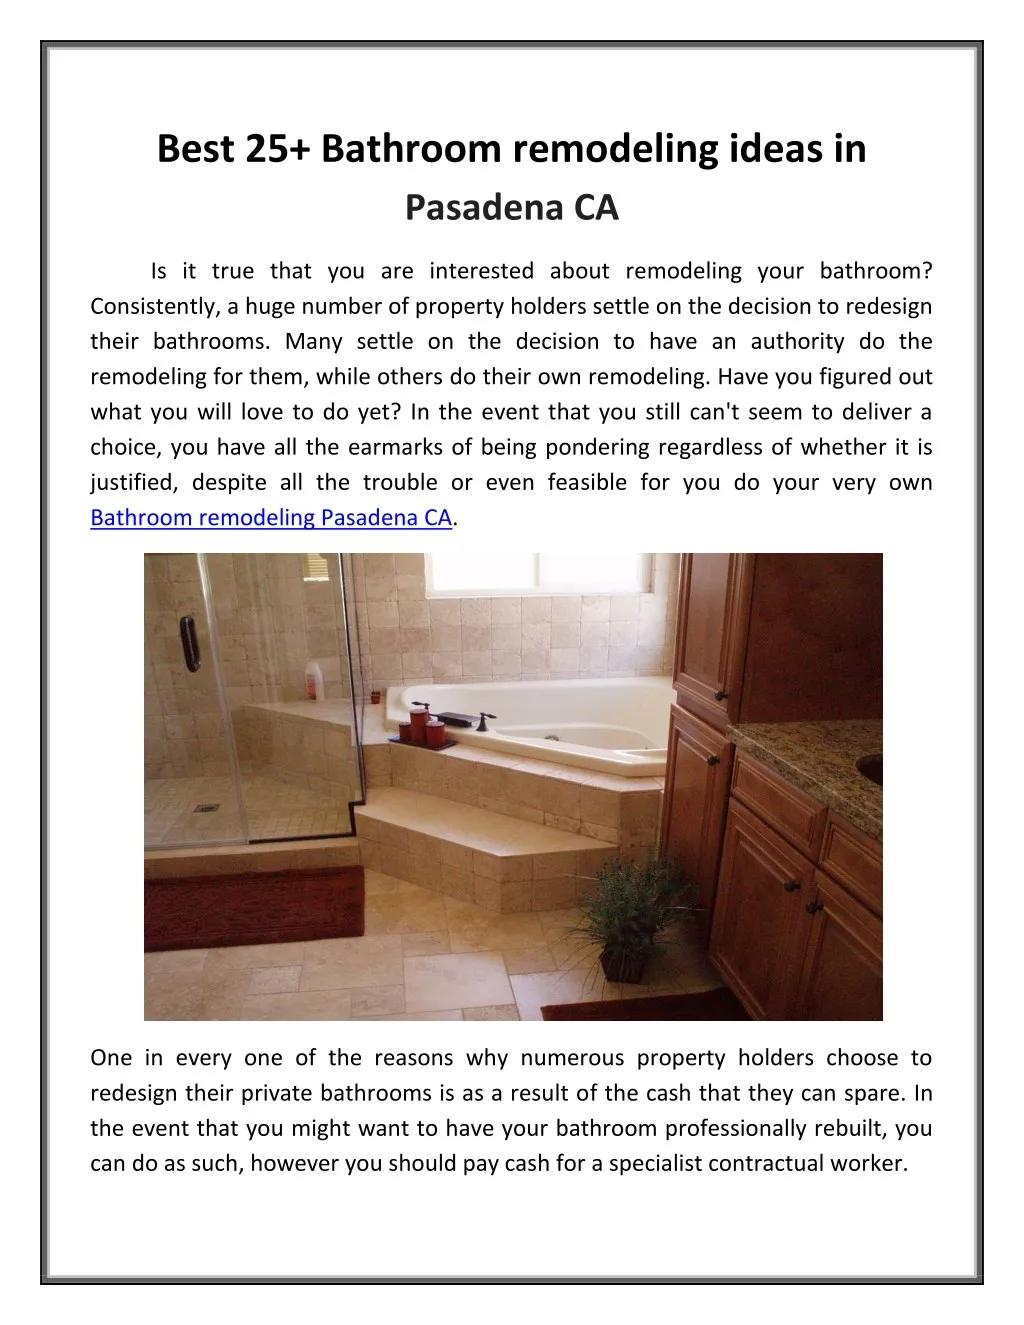 best 25 bathroom remodeling ideas in pasadena ca